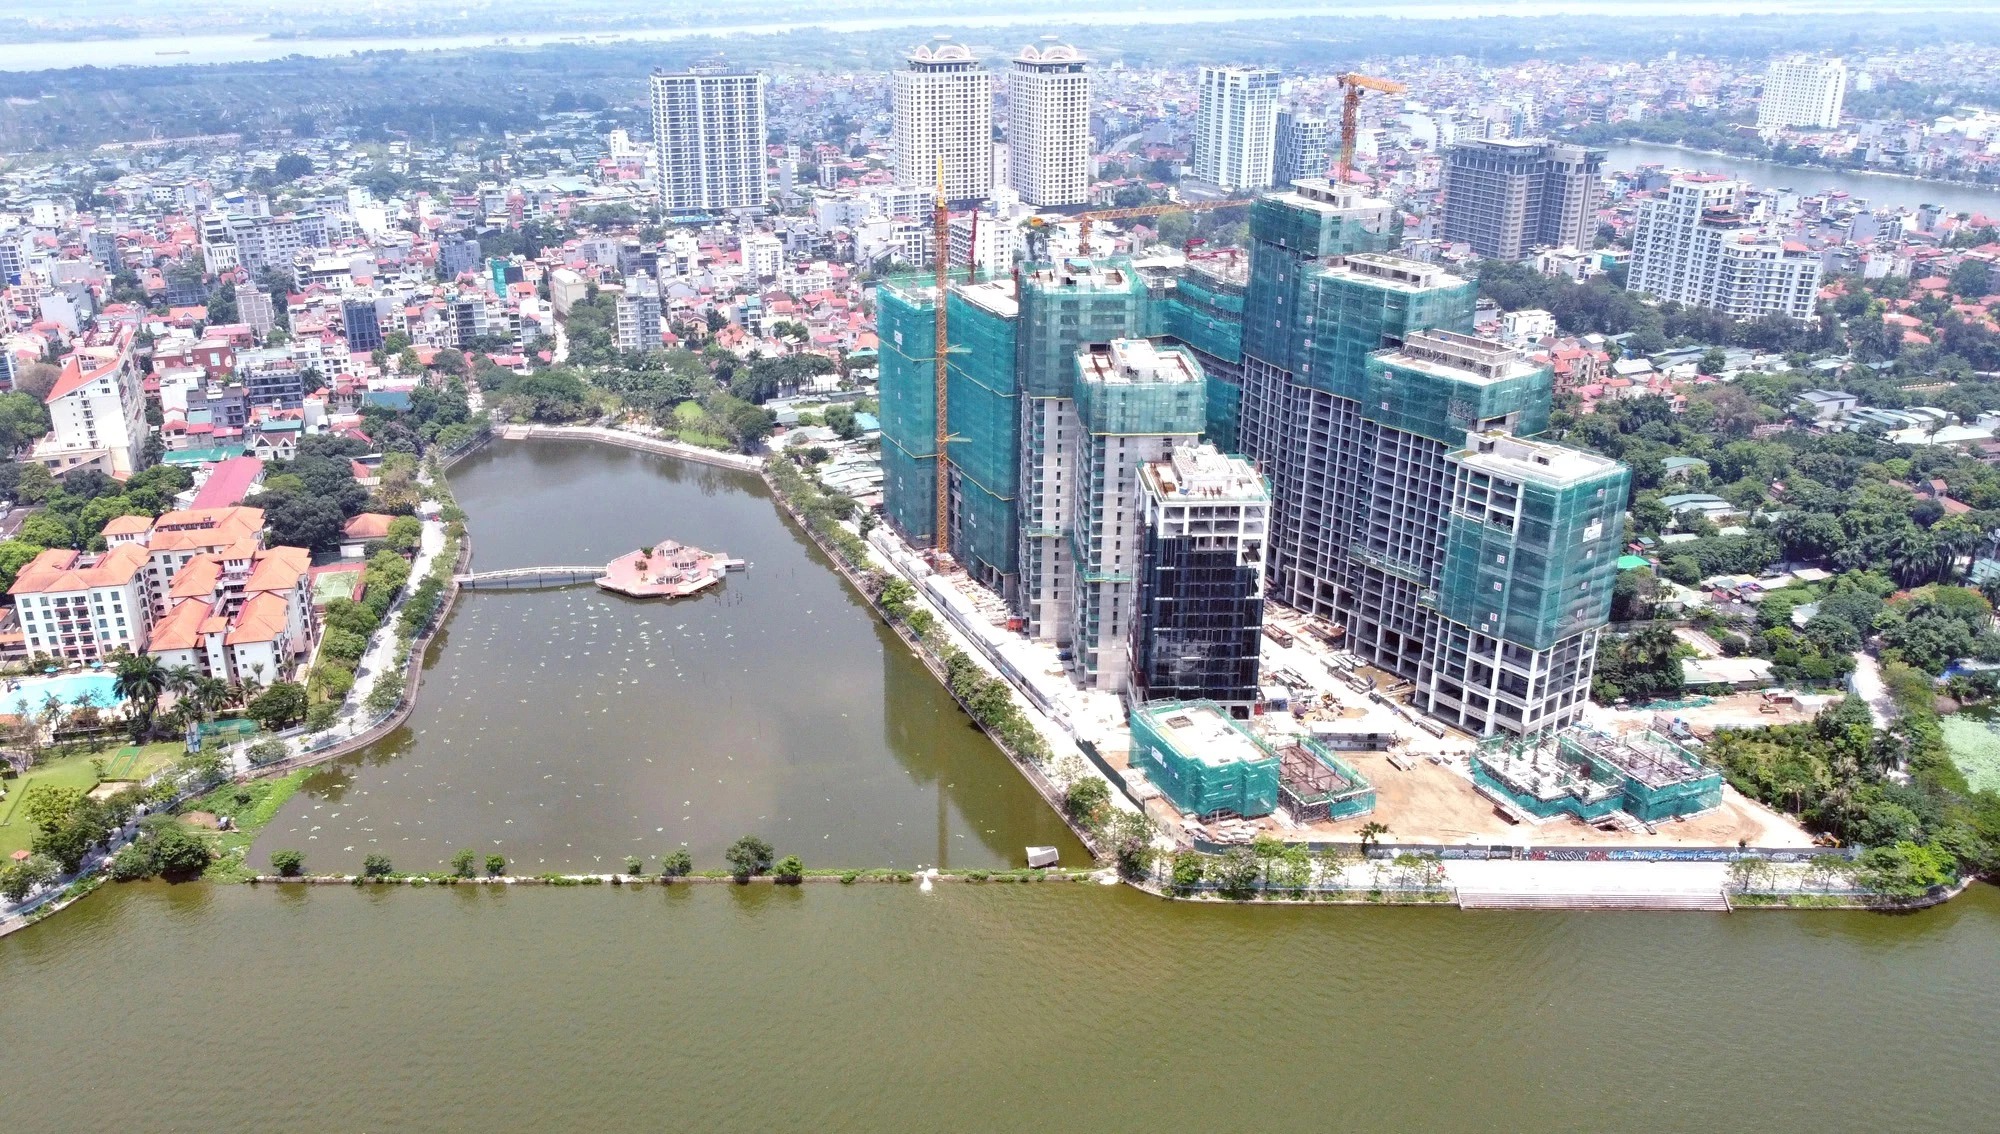 Dự án của Sun Group đang xây dựng tại phường Quảng An khá gần cầu Tứ Liên